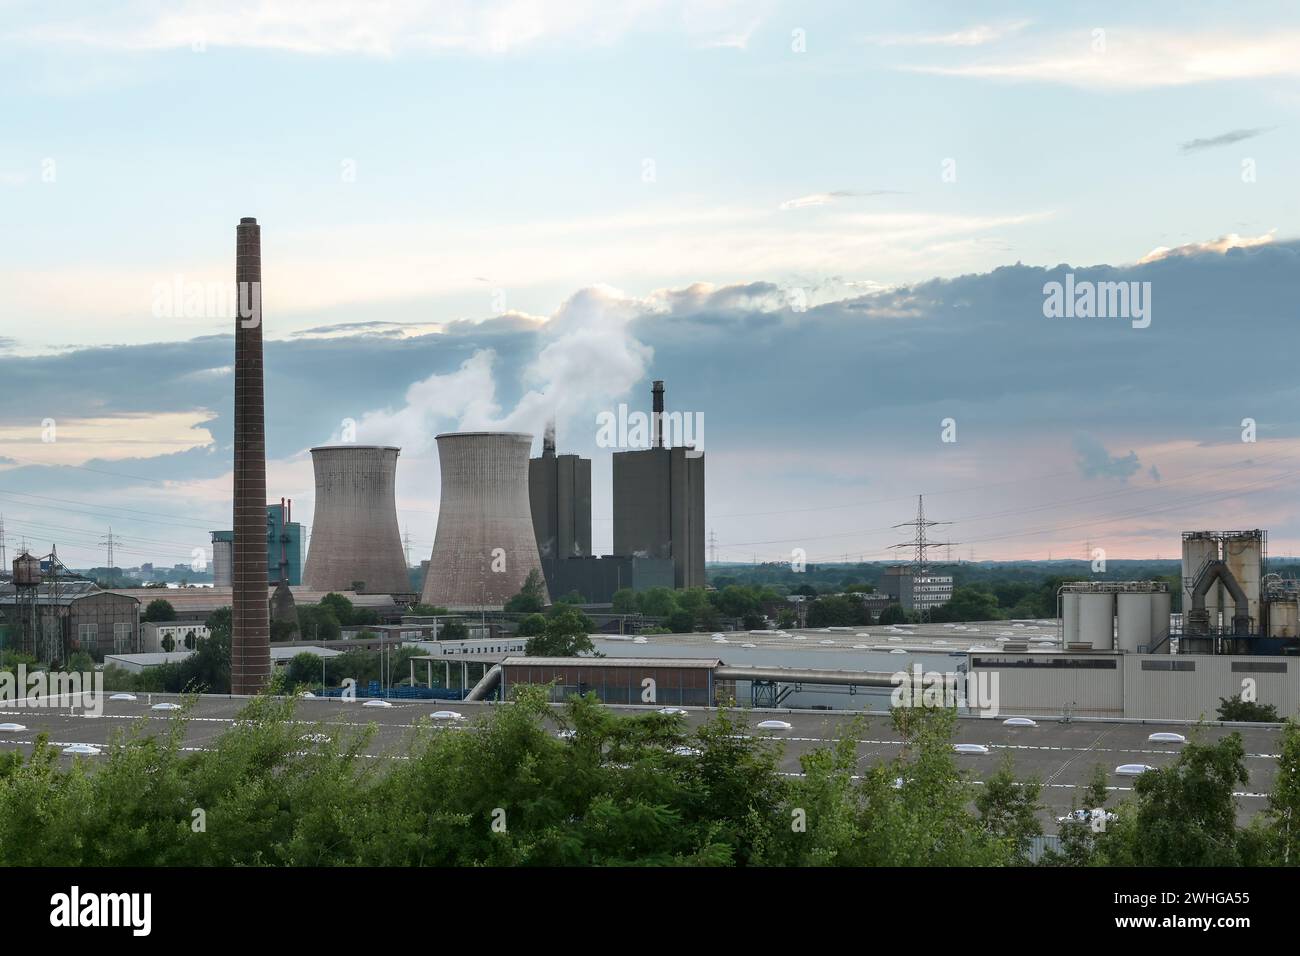 Cheminée et tours de refroidissement avec pollution, industrie sidérurgique à Duisburg avec hauts fourneaux, four à coke et centrale électrique, Banque D'Images